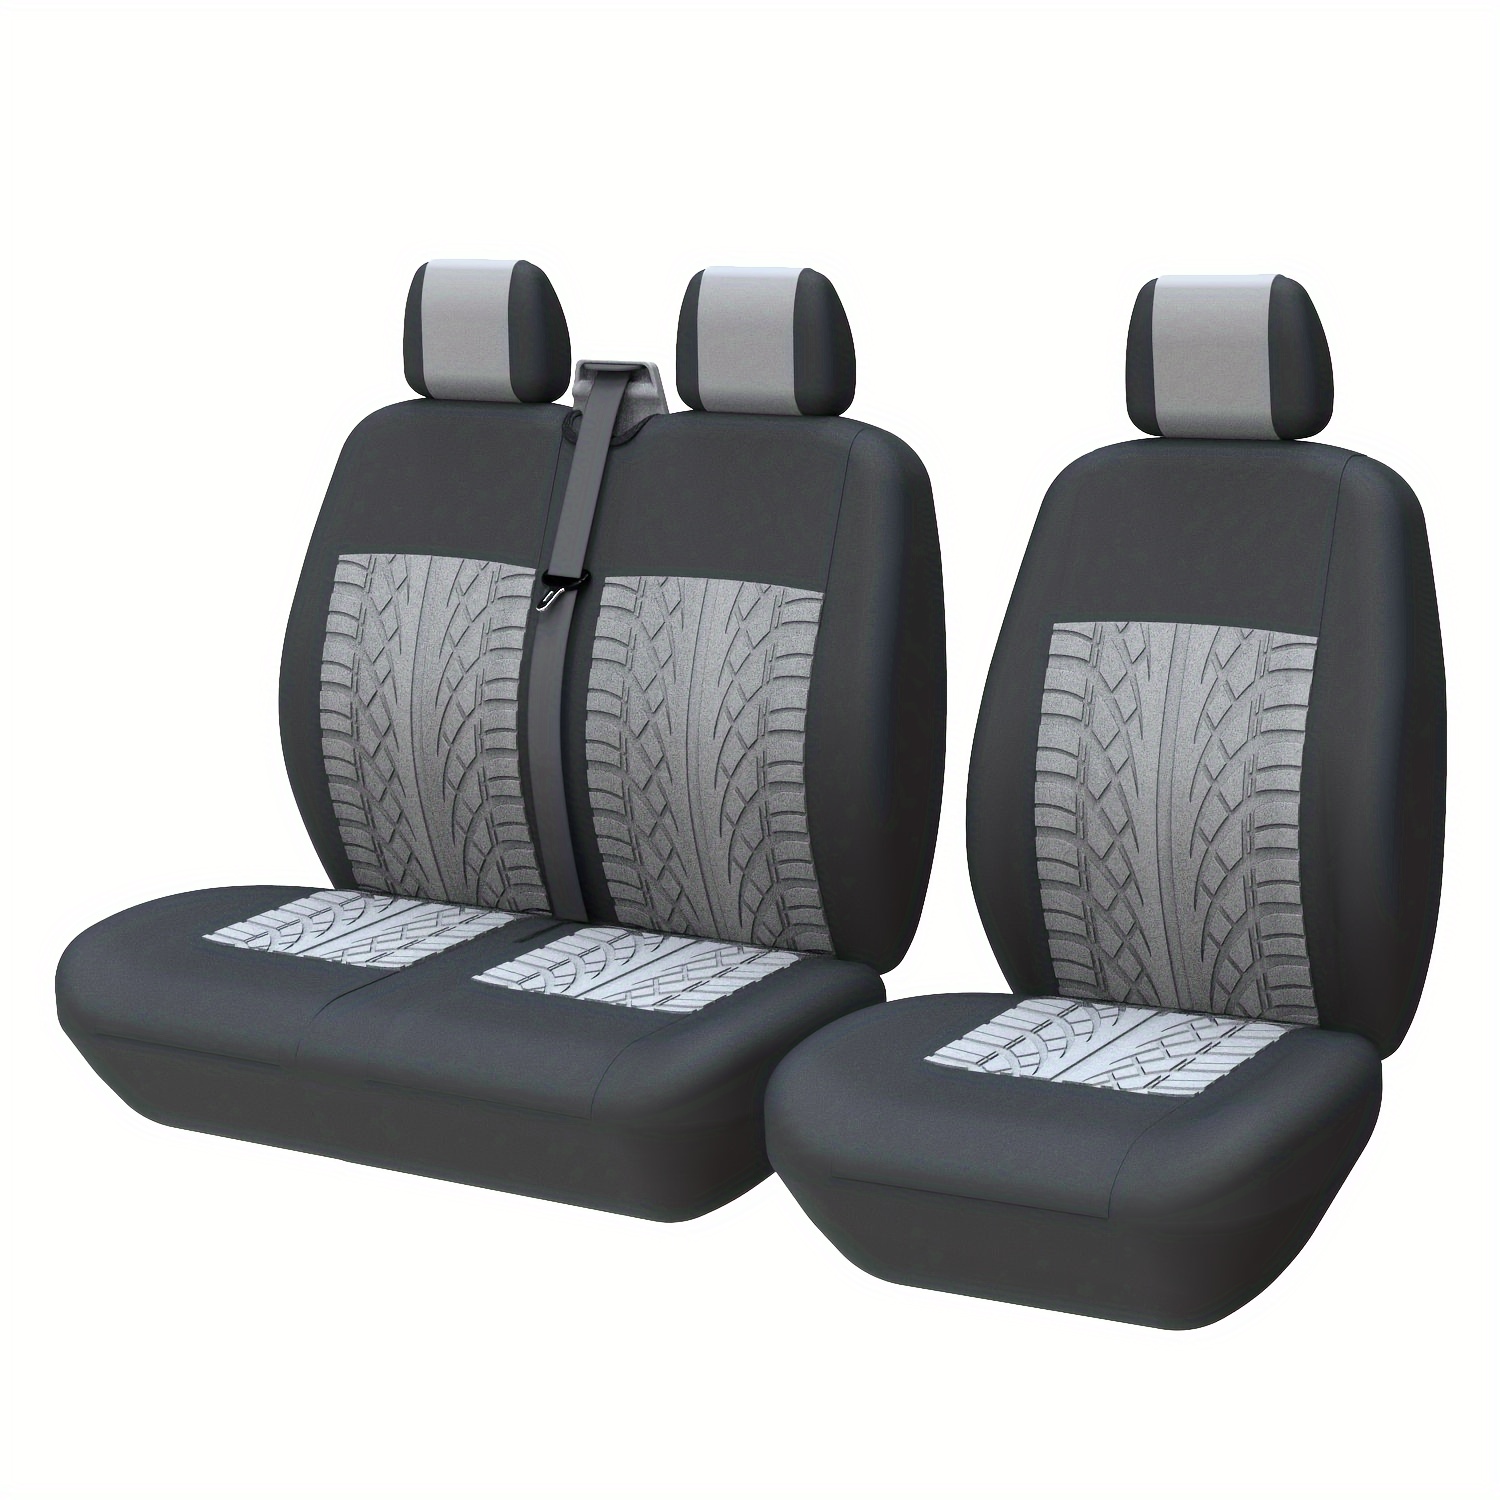 Grau, Schwarz und Weiß Camouflage Auto Sitzbezüge Set Camo Muster